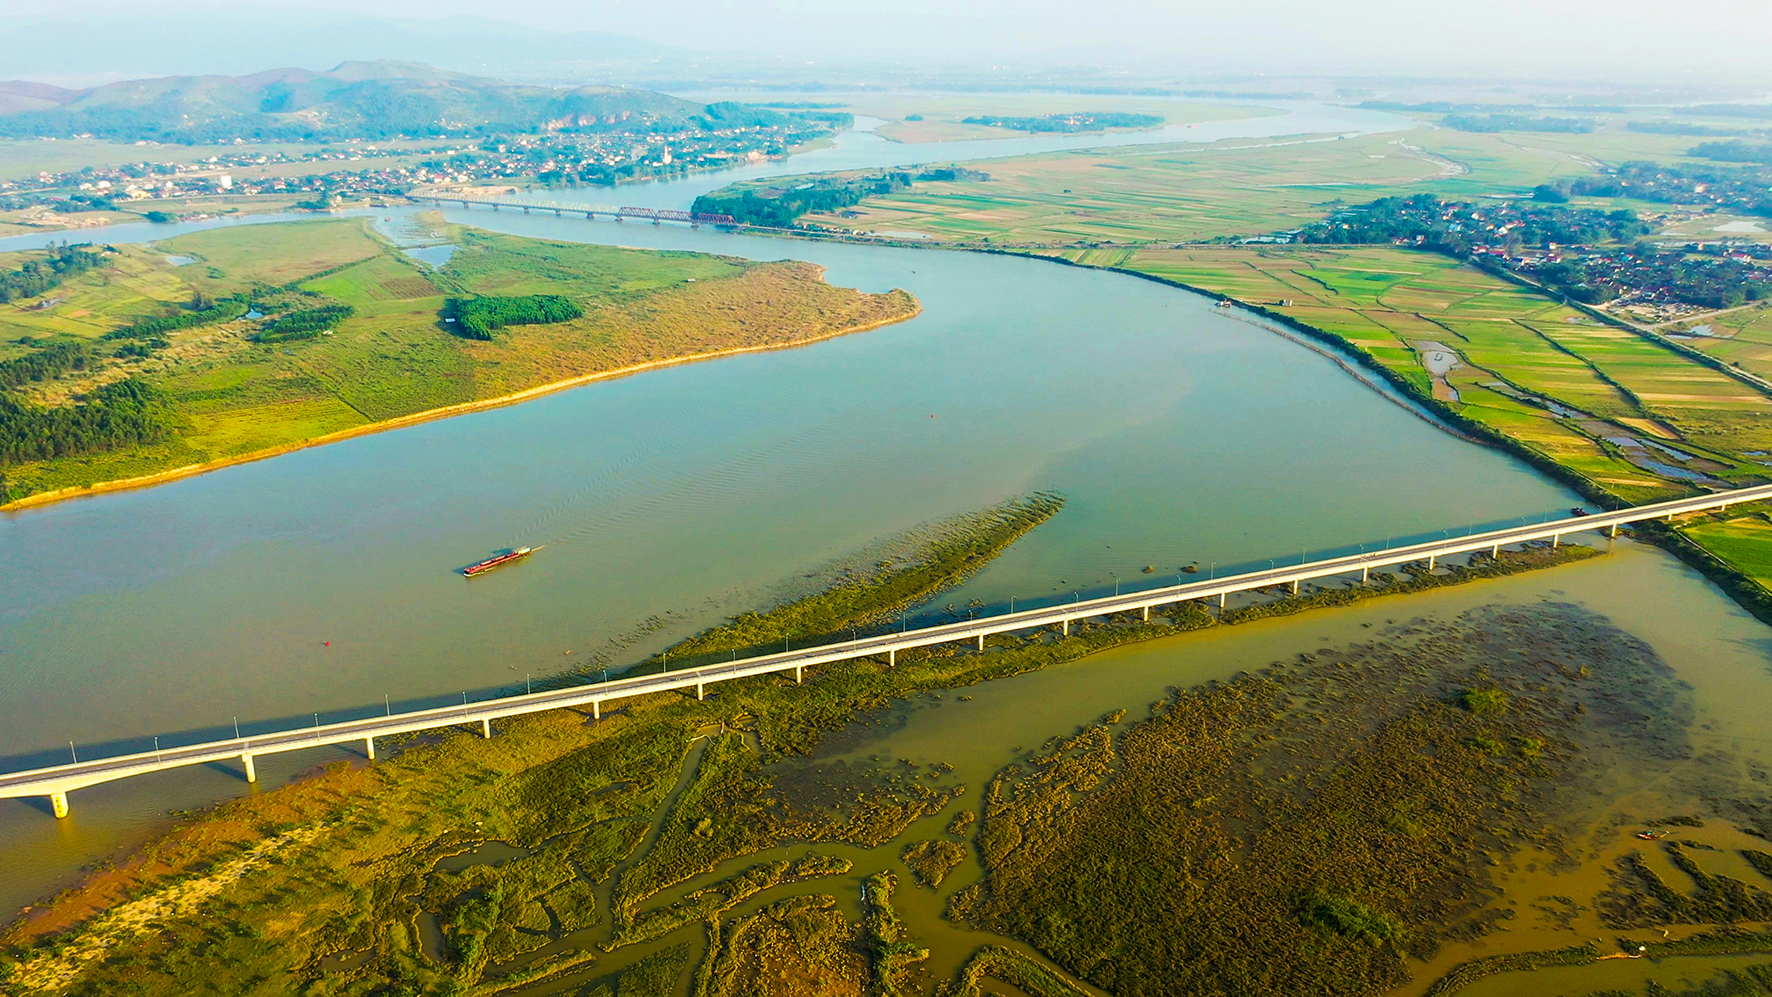 Cầu Yên Xuân và hạ tầng vùng ngập lũ 5 Nam, đường vành đai phía Bắc,... tạo bước đột phá để phát triển kinh tế, phục vụ đời sống dân sinh và xây dựng thành công huyện nông thôn mới. 